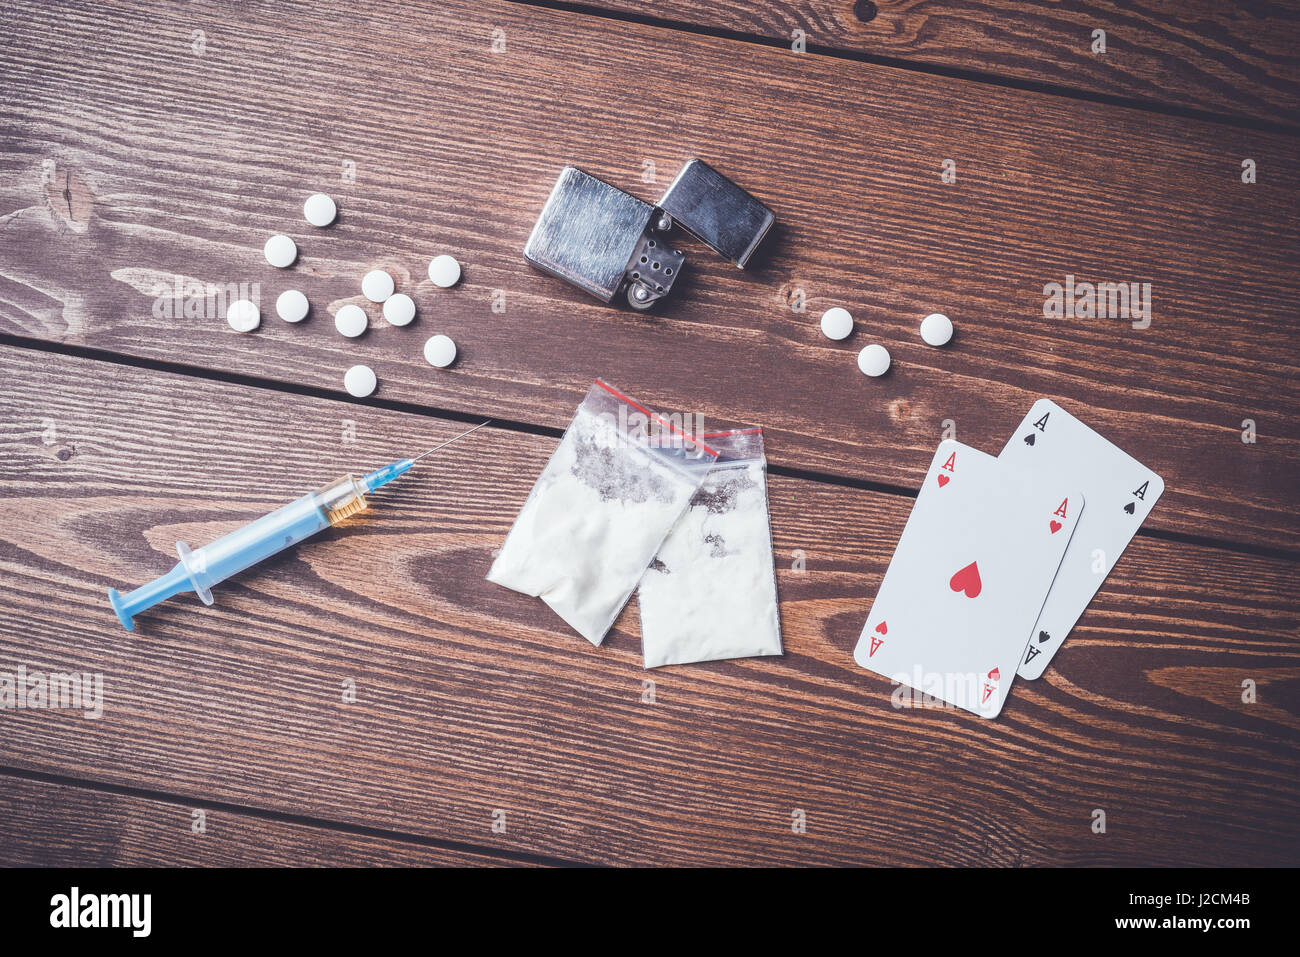 Harte Drogen mit Pillen, Spielkarten und Spritze auf hölzernen Tisch Stockfoto